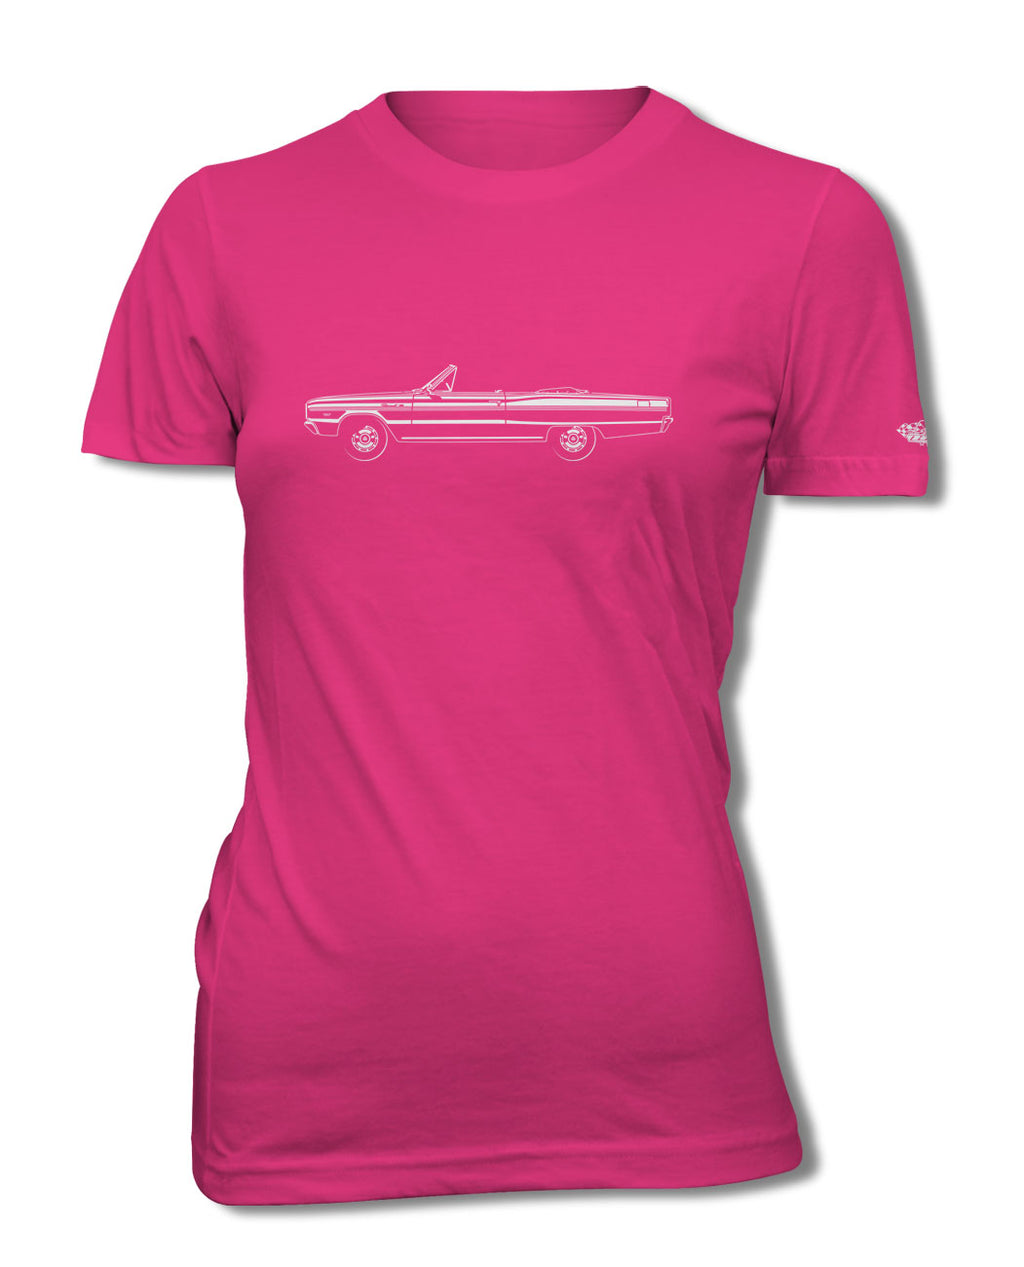 1966 Dodge Coronet 440 383 ci Convertible T-Shirt - Women - Side View